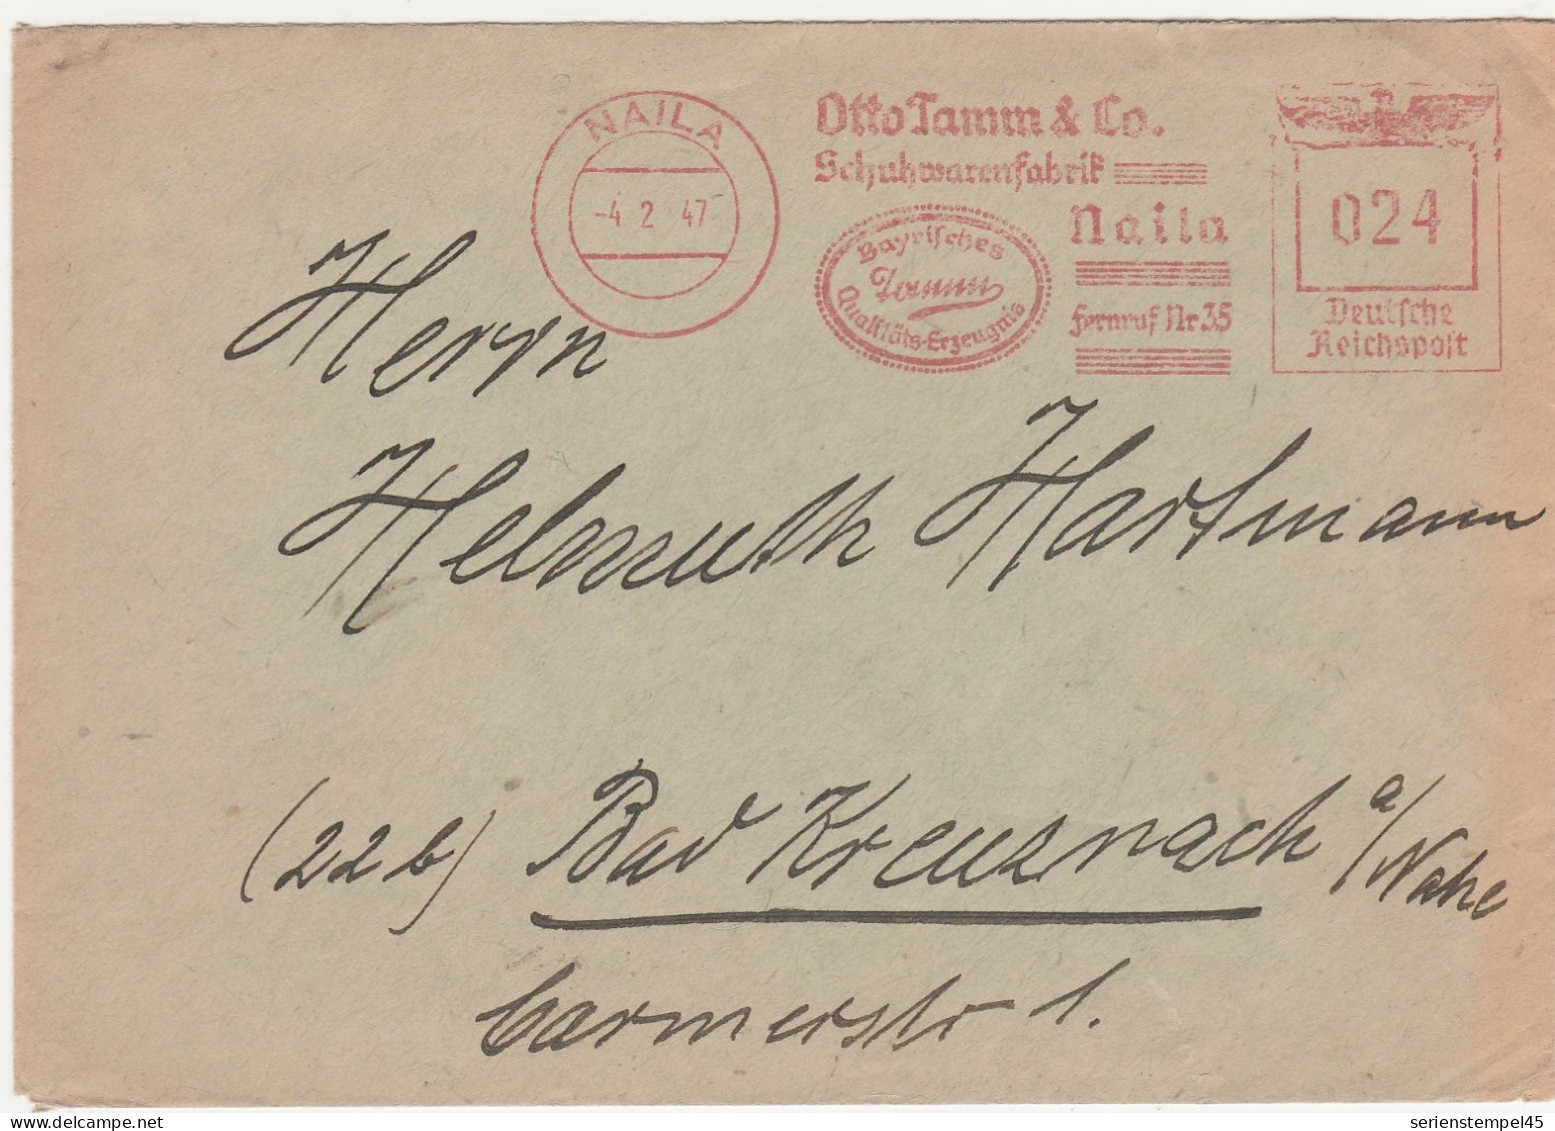 Deutschland 1947 Brief Mit Freistempel Naila Otto Tamm & Co Schuhwarenfabrik LK Hof Alter Stempelkopf - Nooduitgaven Amerikaanse Zone